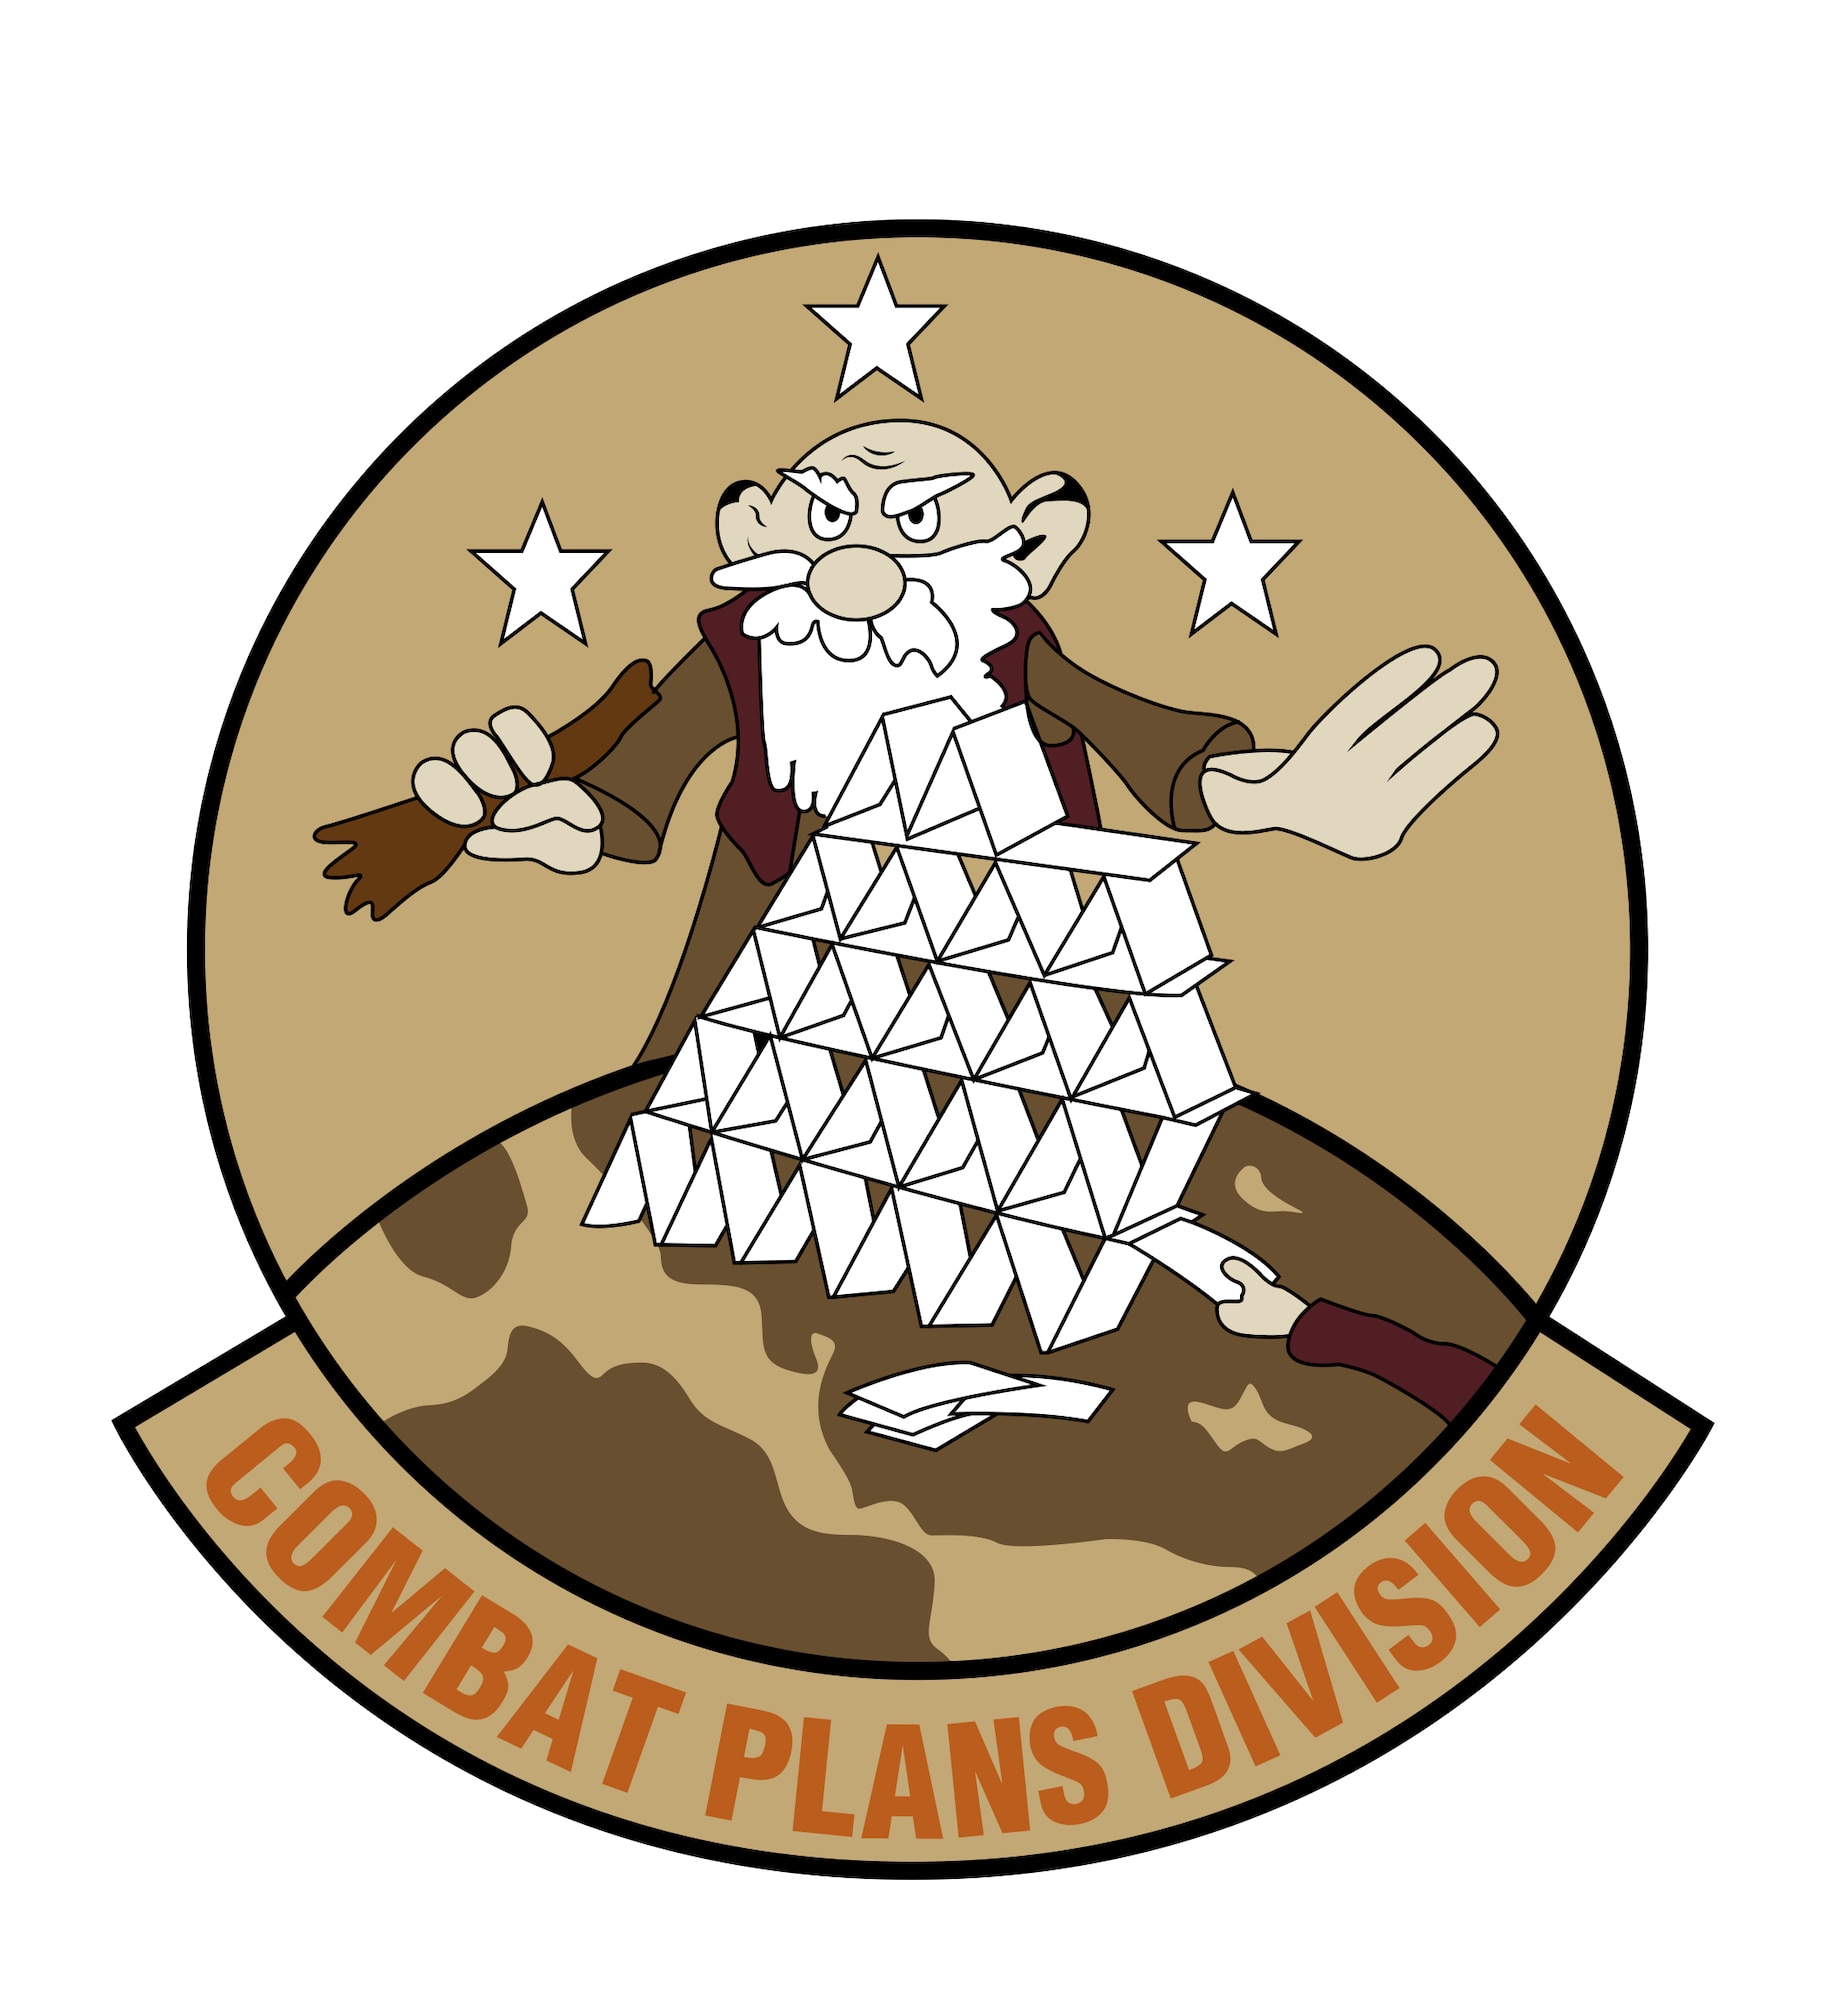 Combat Plans Division